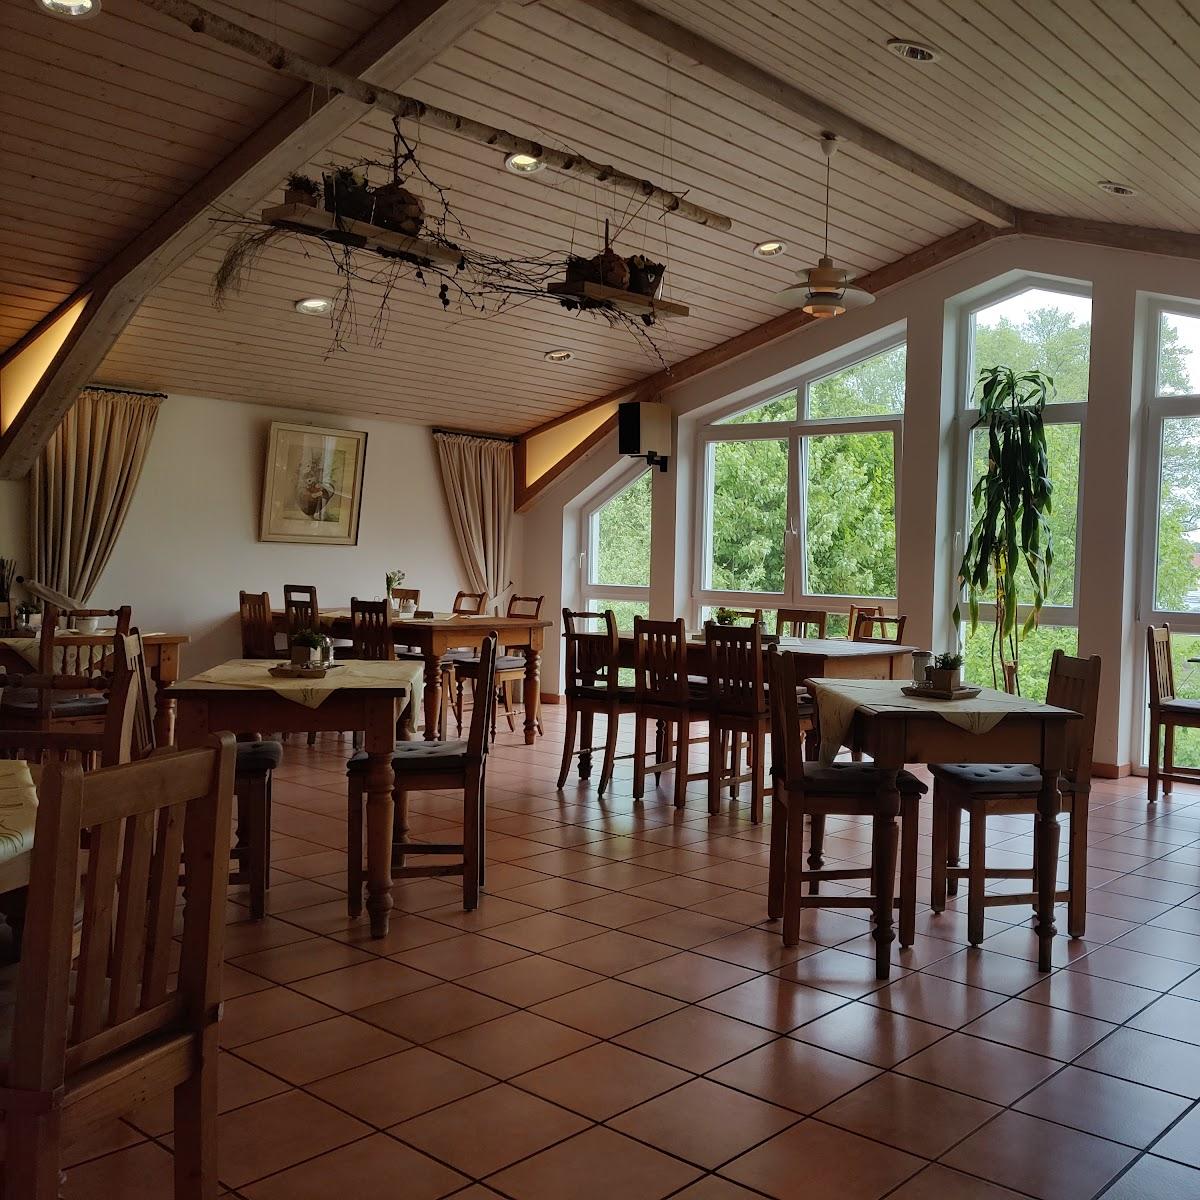 Restaurant "Brunnenhof in der Ried - Familie Große-Streuer" in Herten